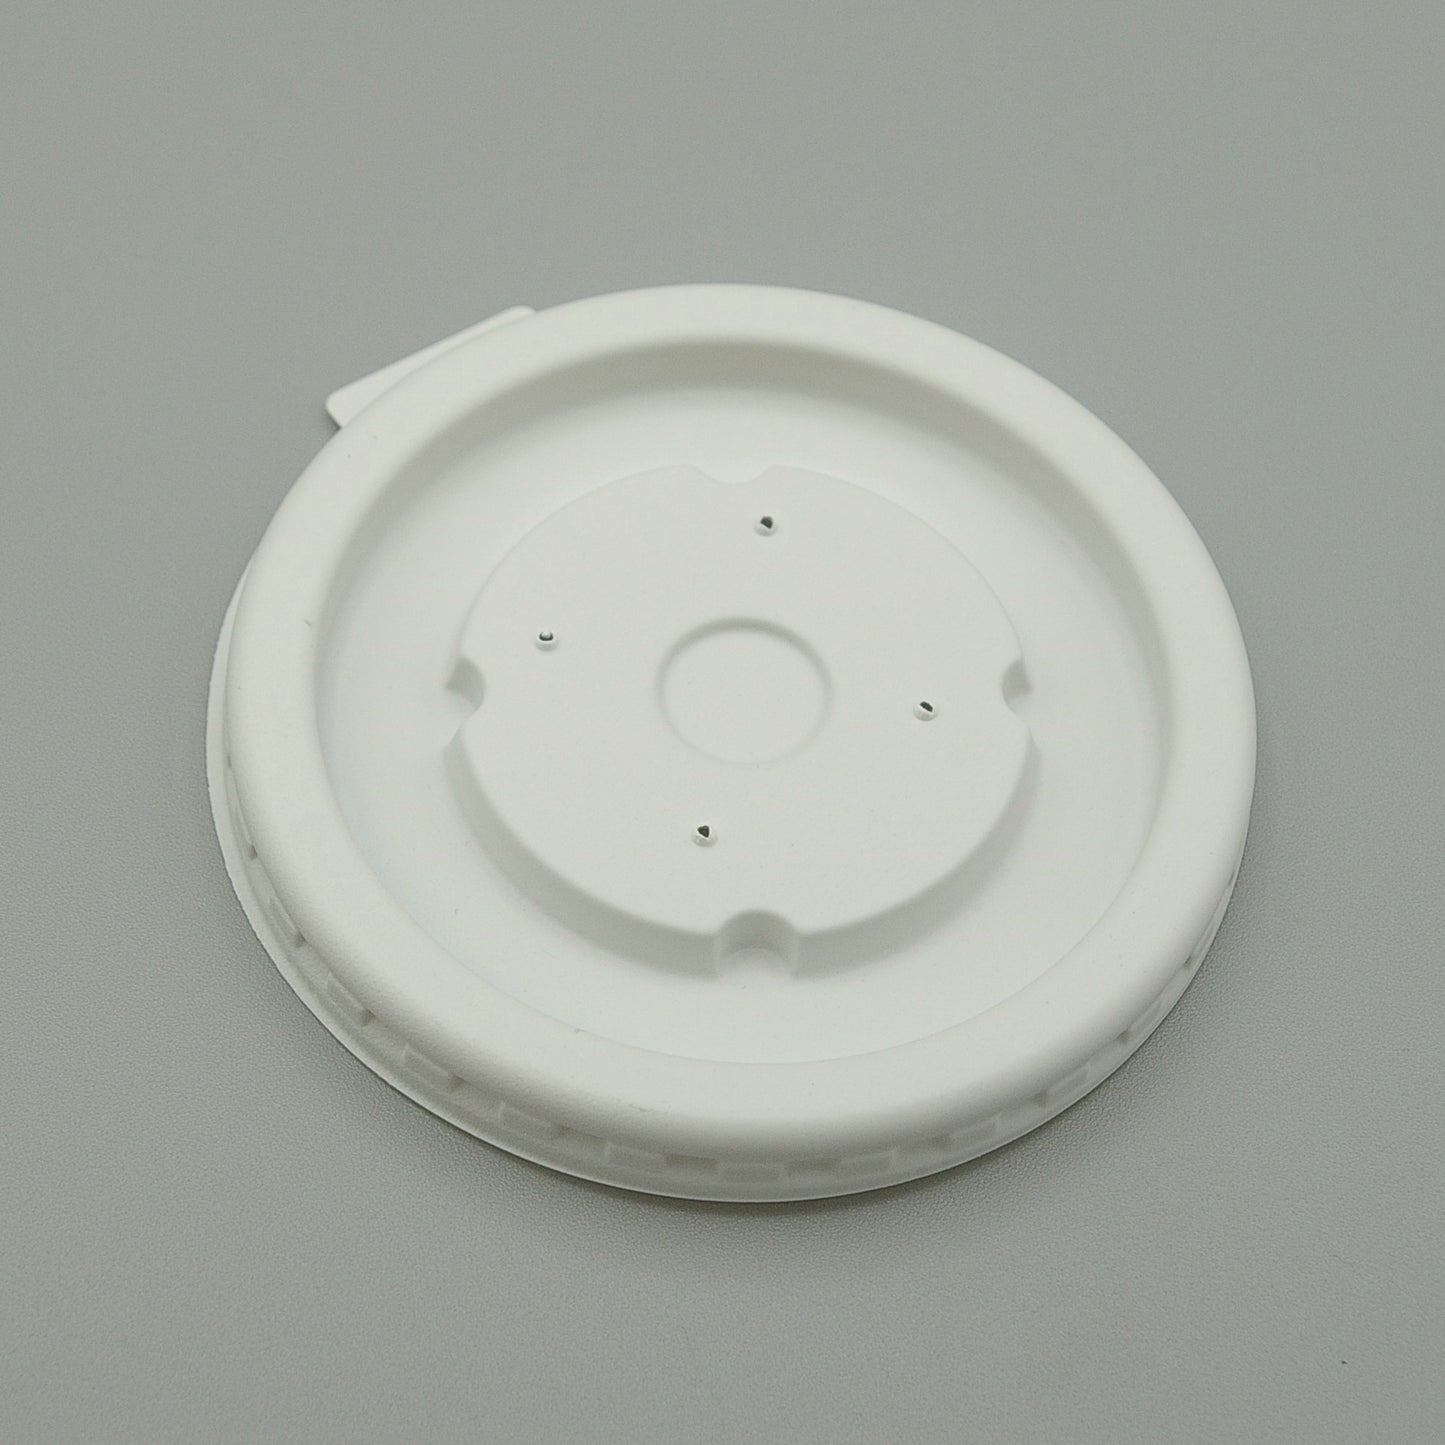 LDSO-HT2(PP) - High Temp Disposable Plastic Soup Bowl Lid